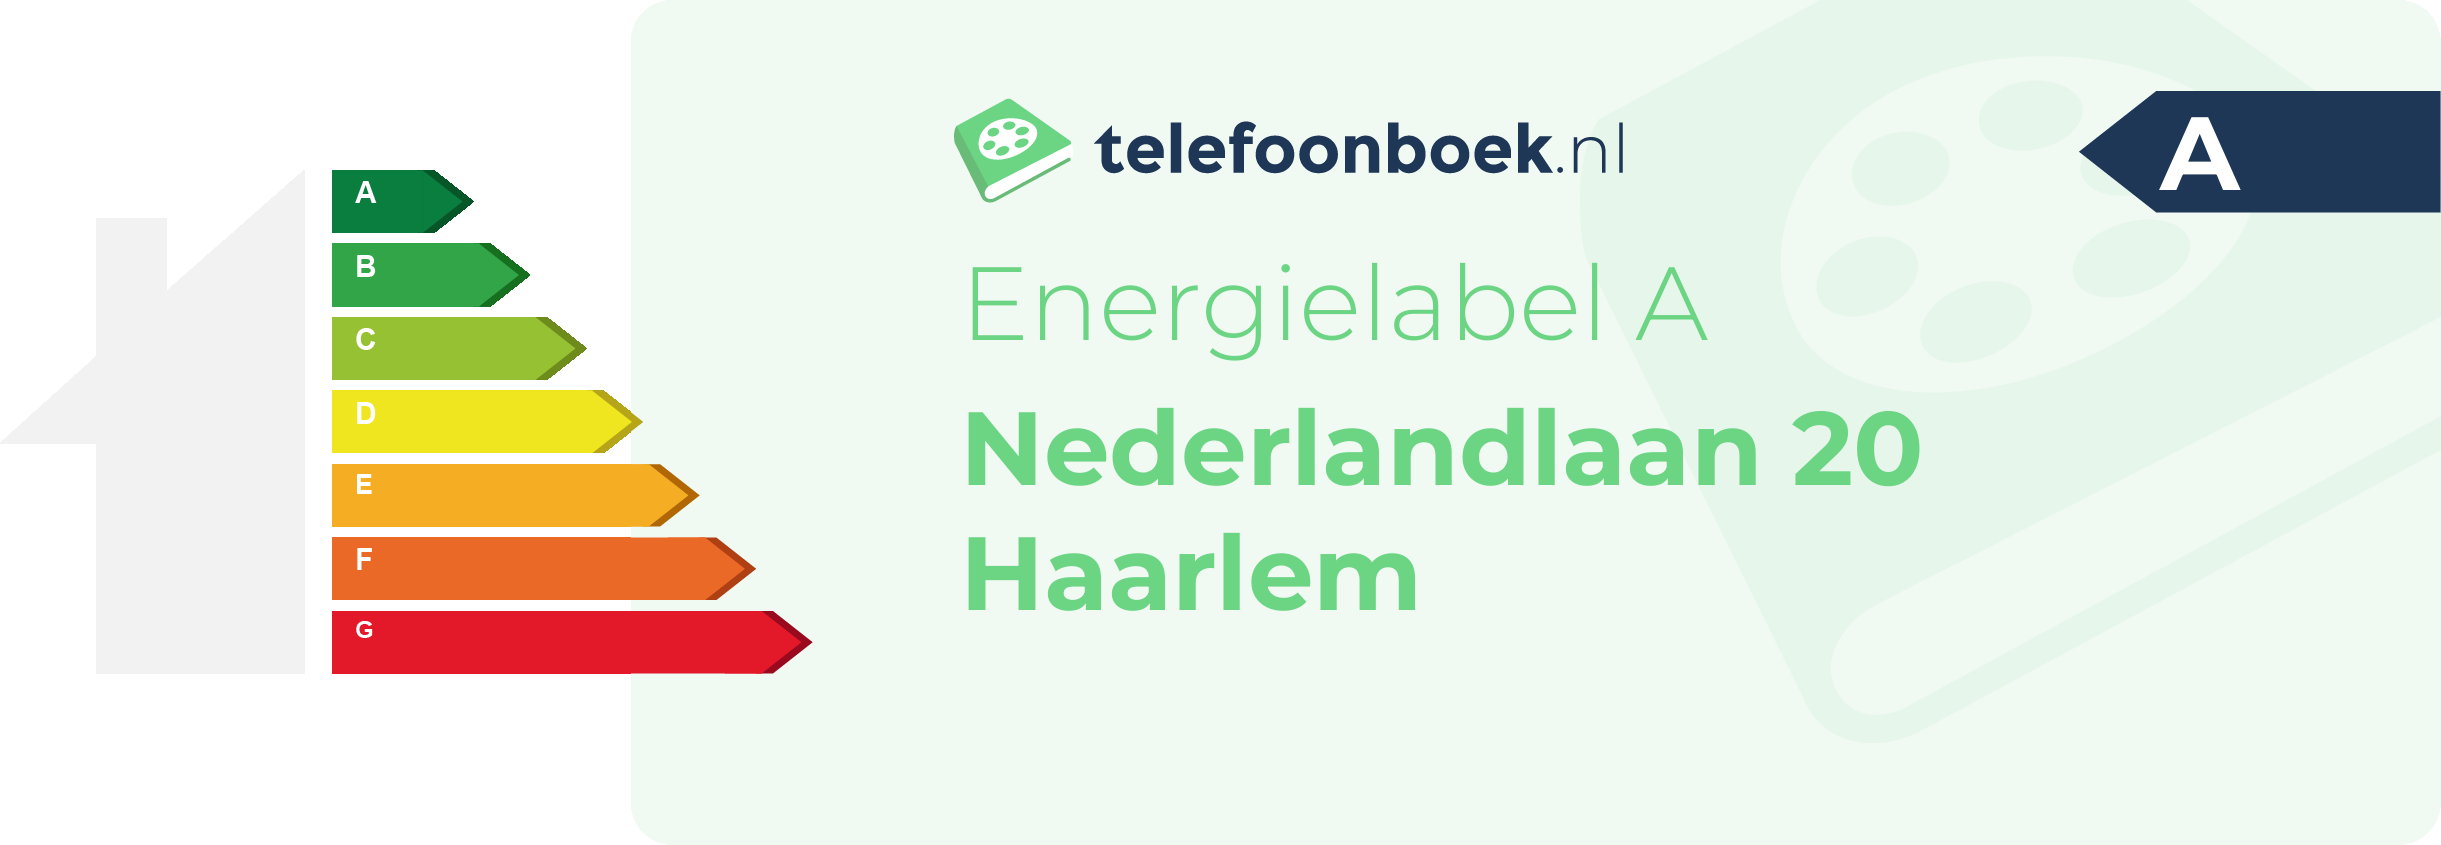 Energielabel Nederlandlaan 20 Haarlem